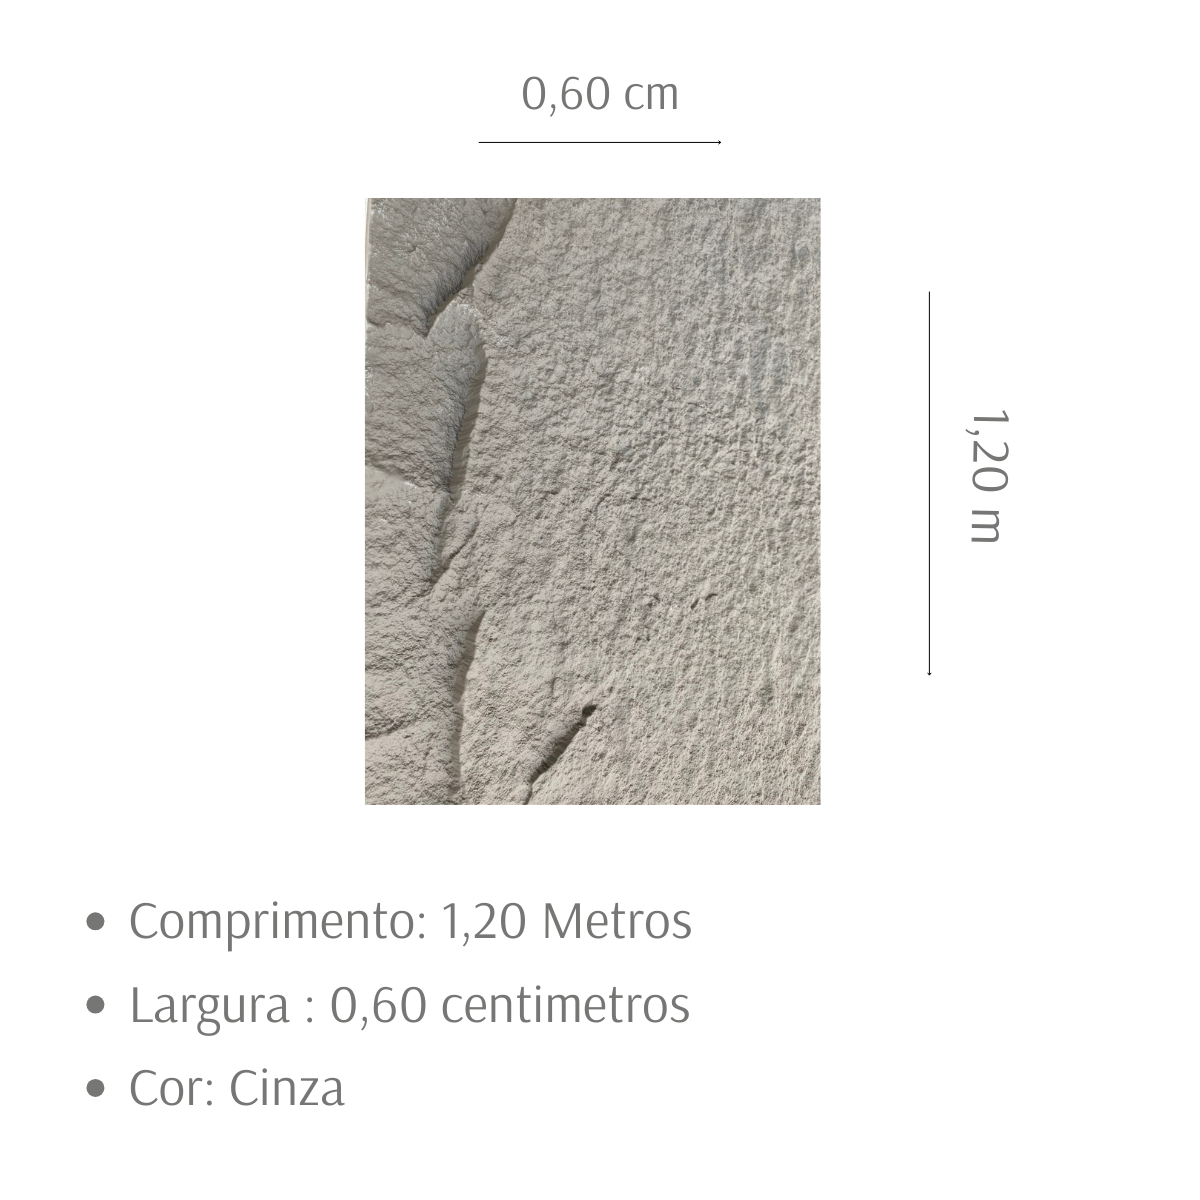 Pedra Artificial Revestimento Parede Textura Relevo Impermeavel Impacto 1,20mx0,60m Decoração 3d - 2